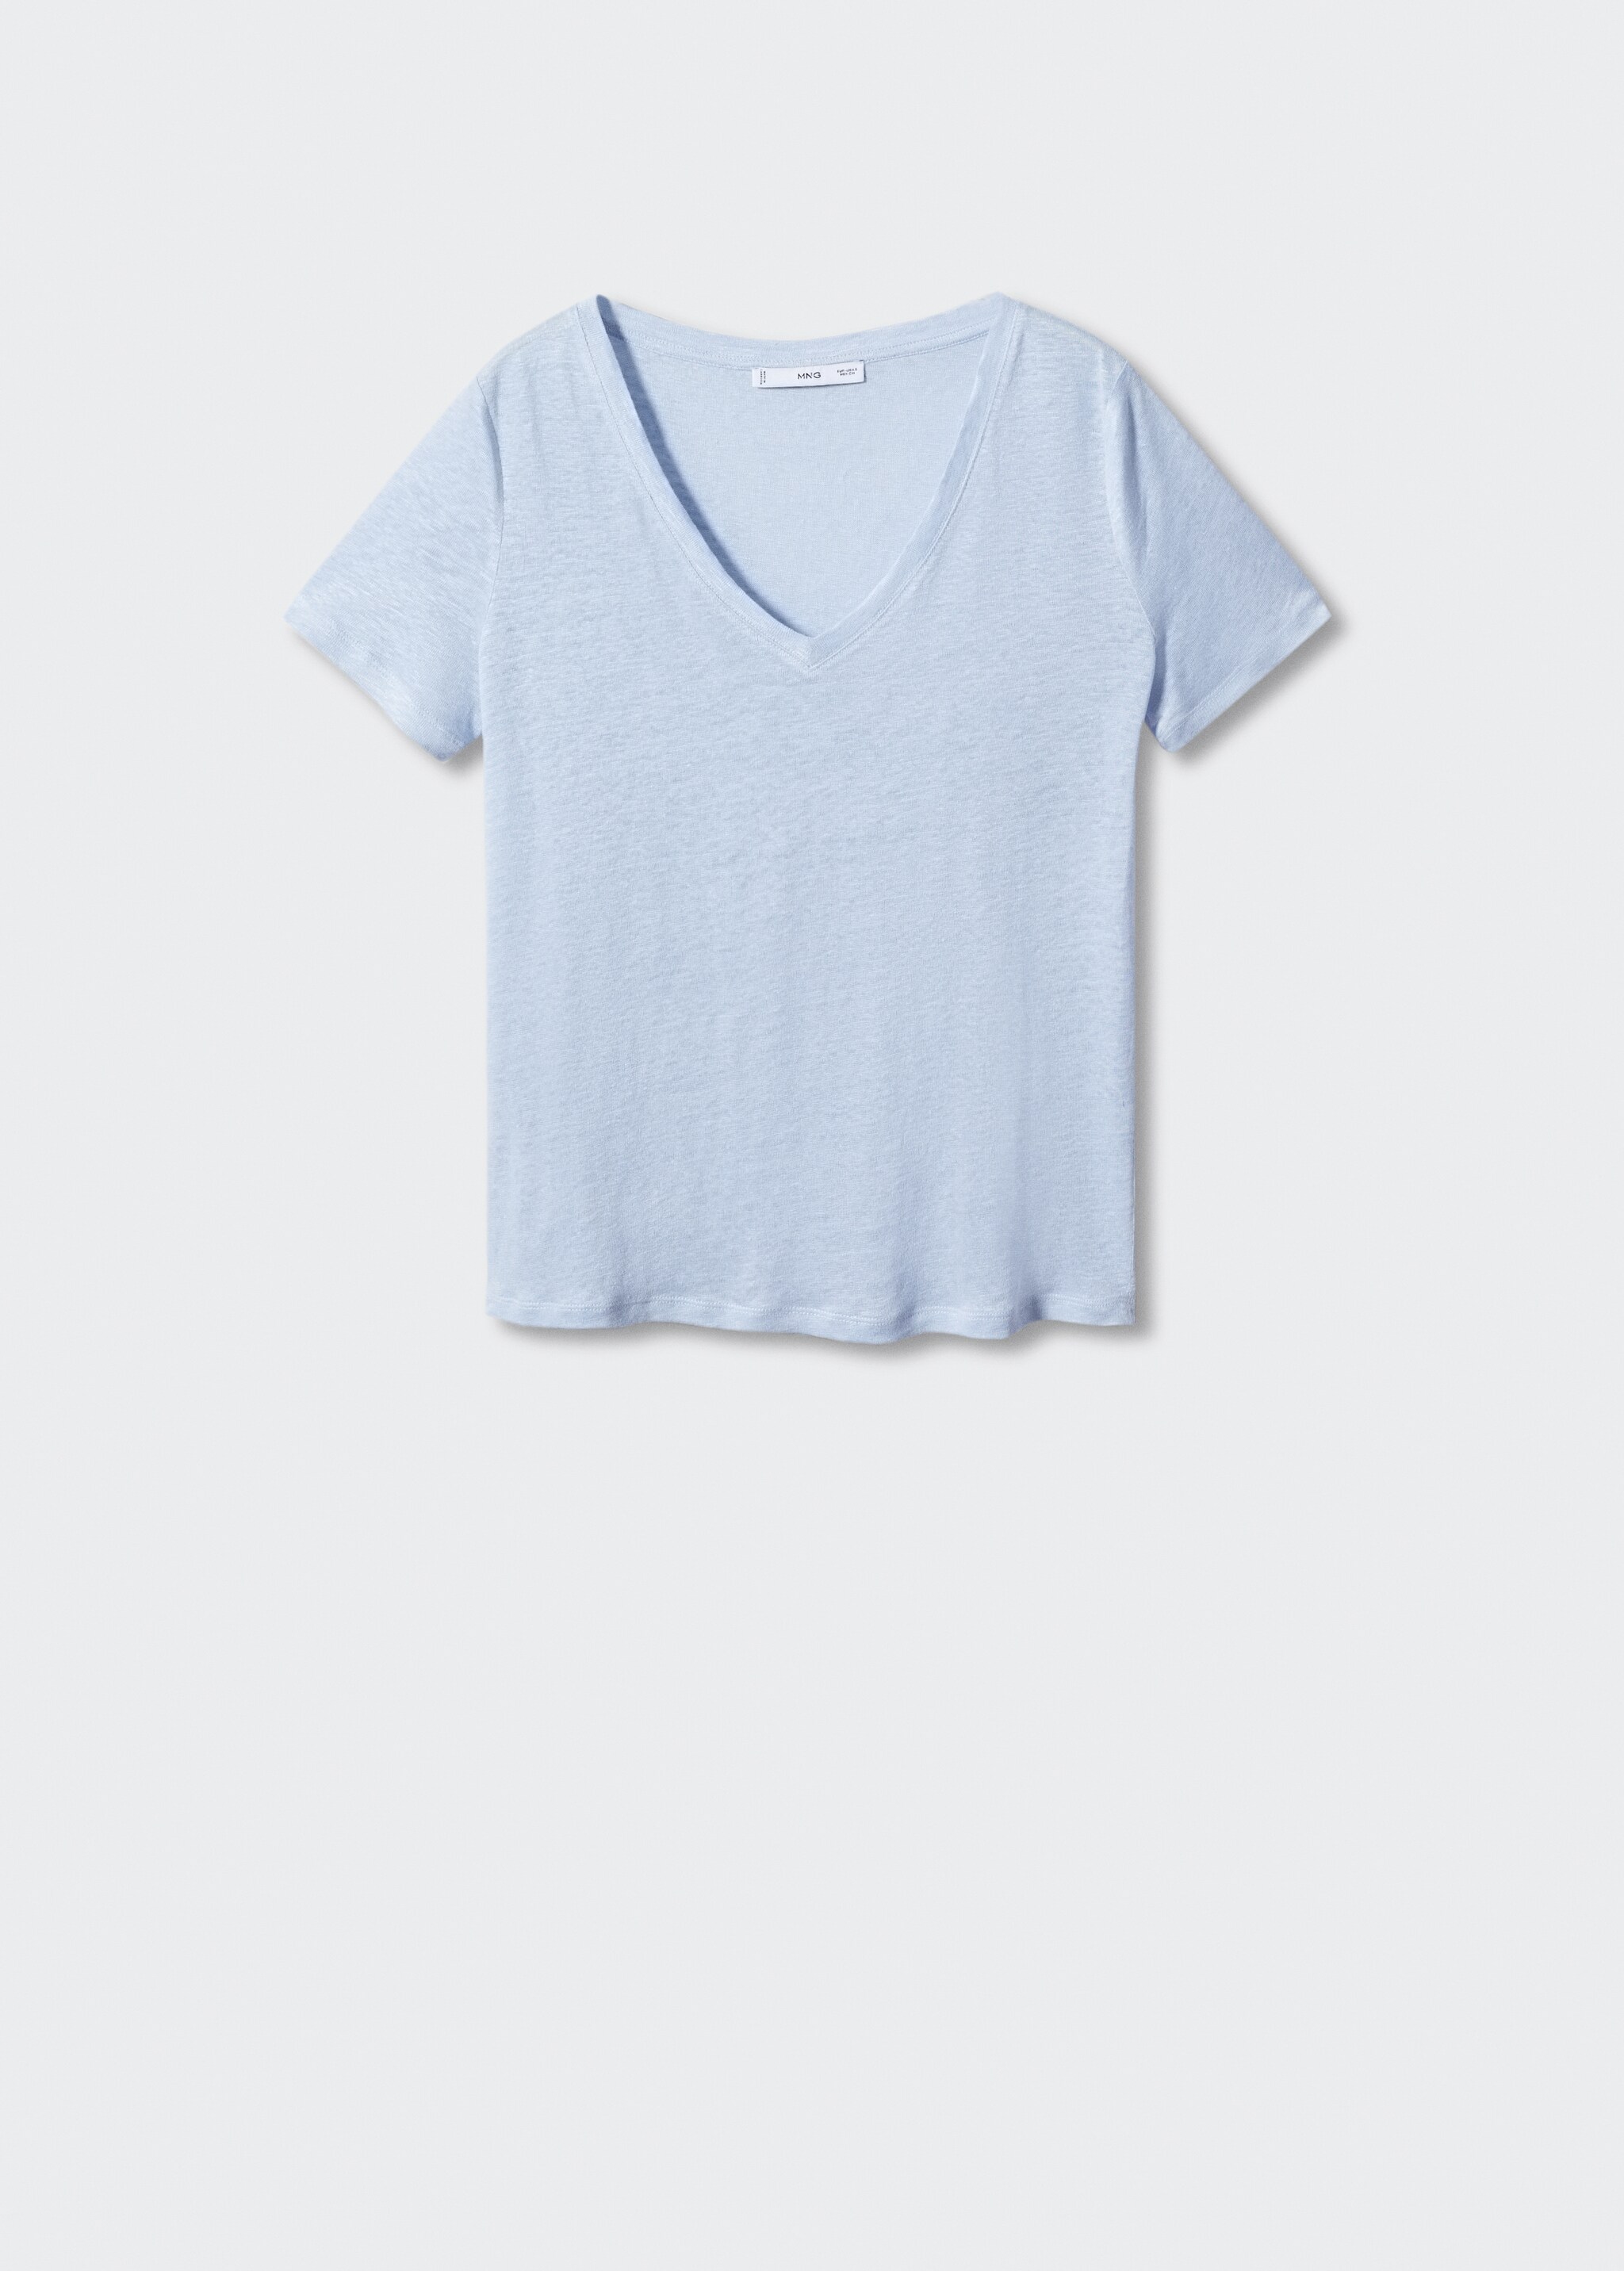 Camiseta lino cuello pico - Artículo sin modelo